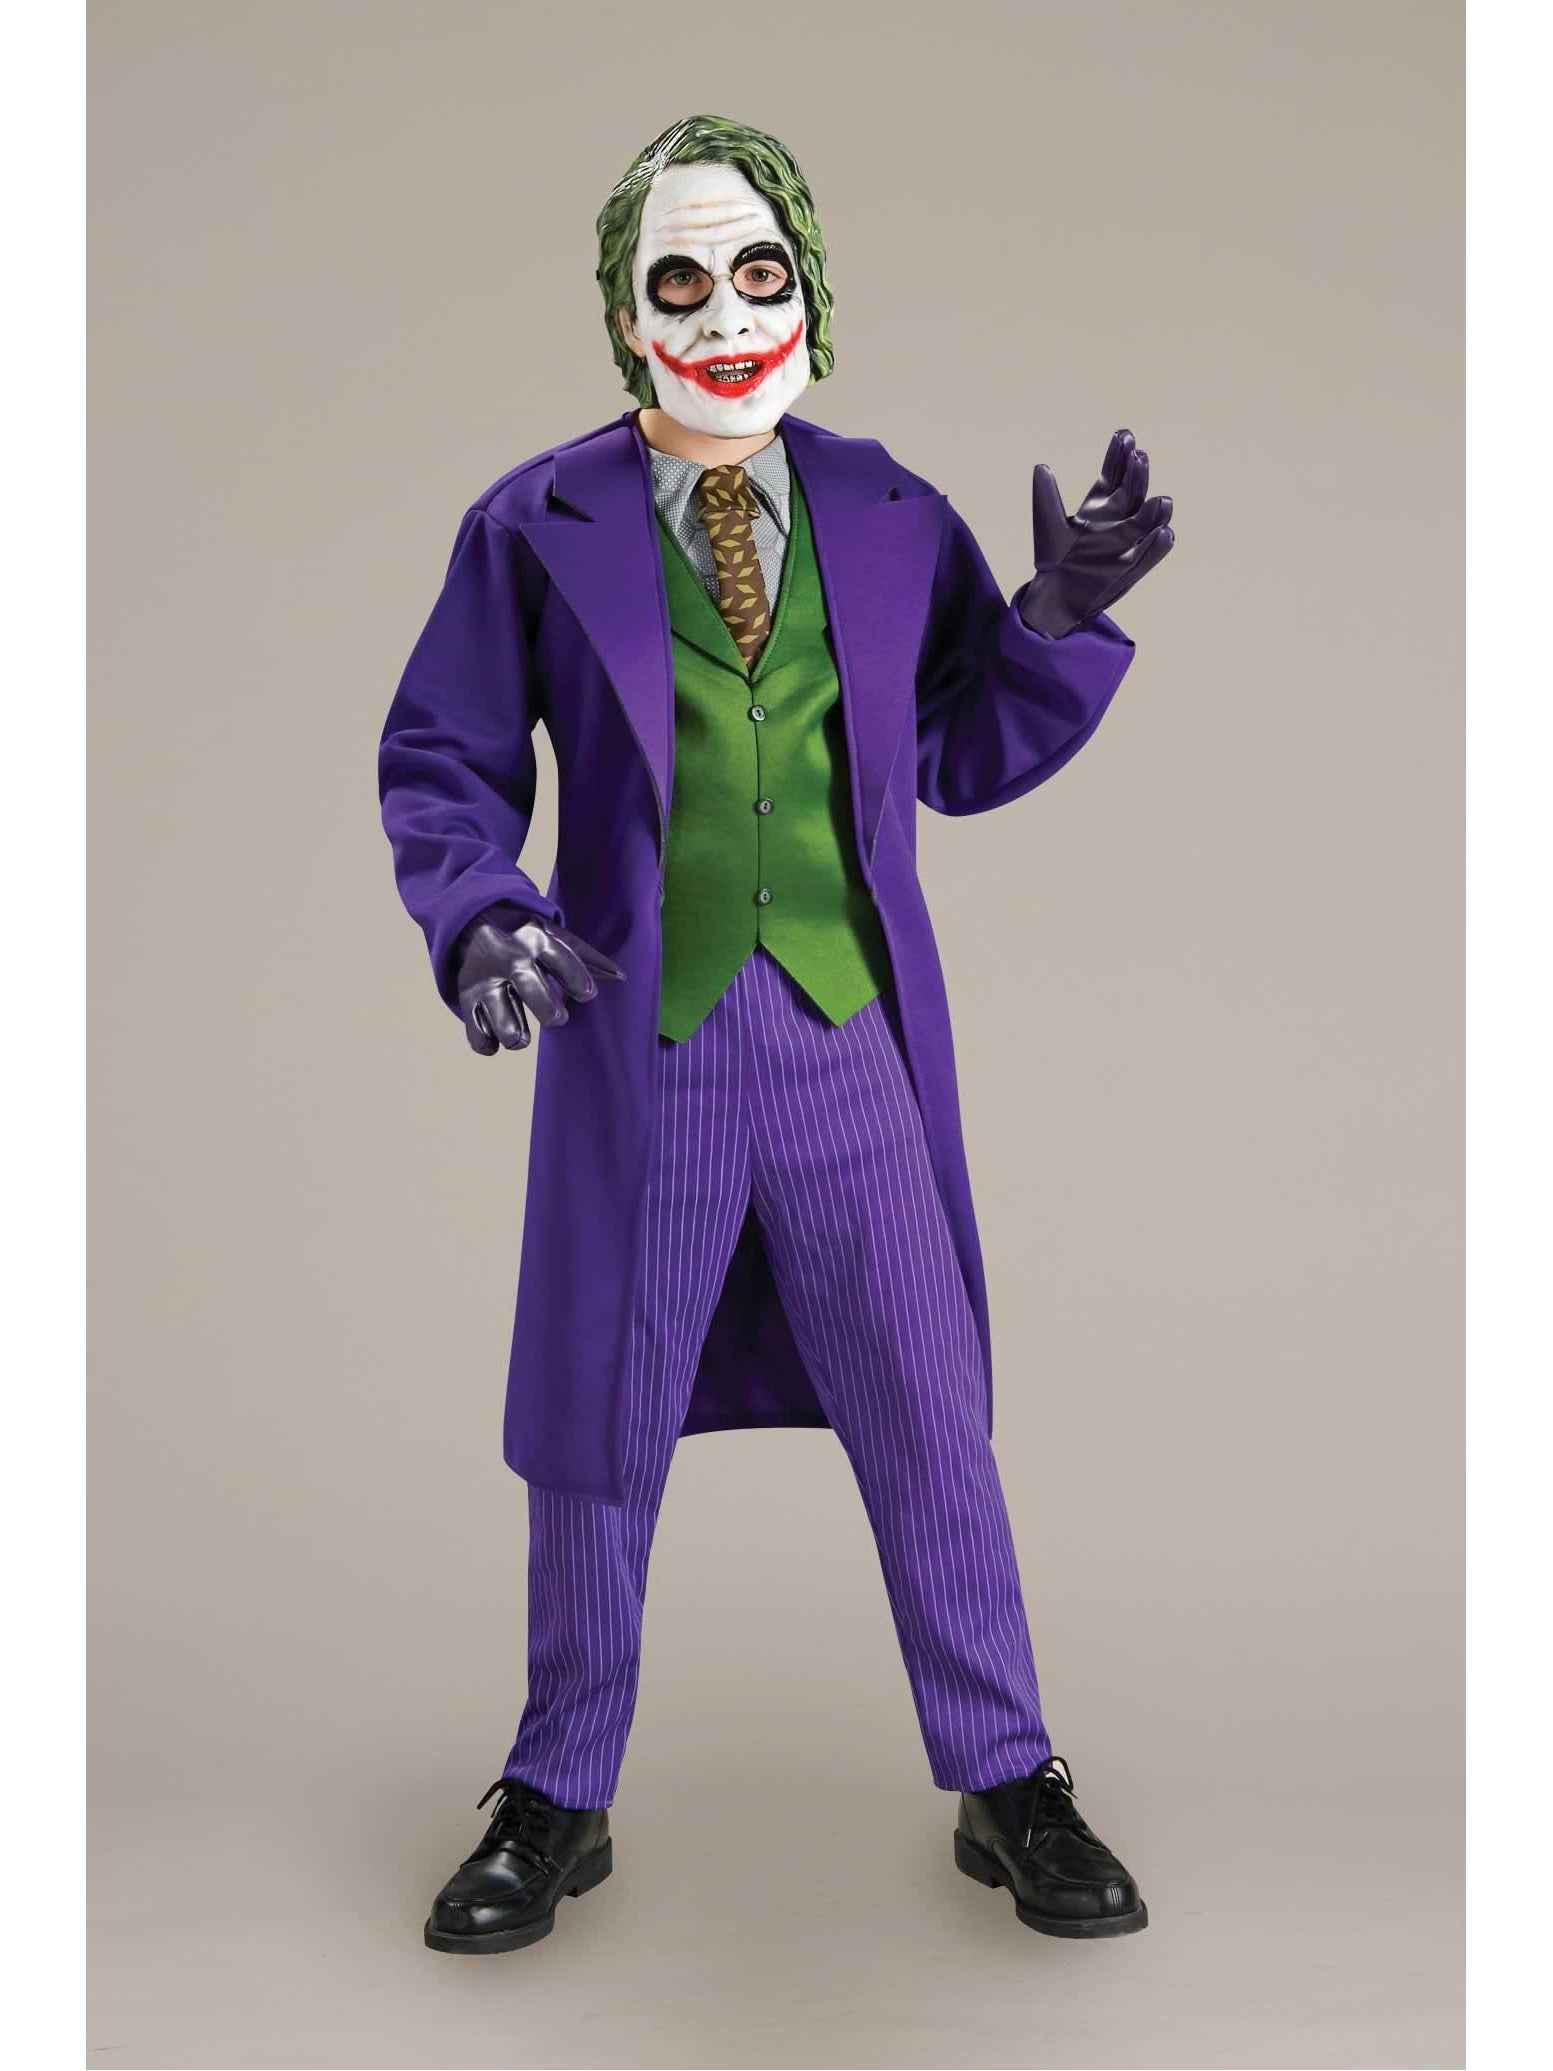 Joker Costume for Kids - Chasing Fireflies